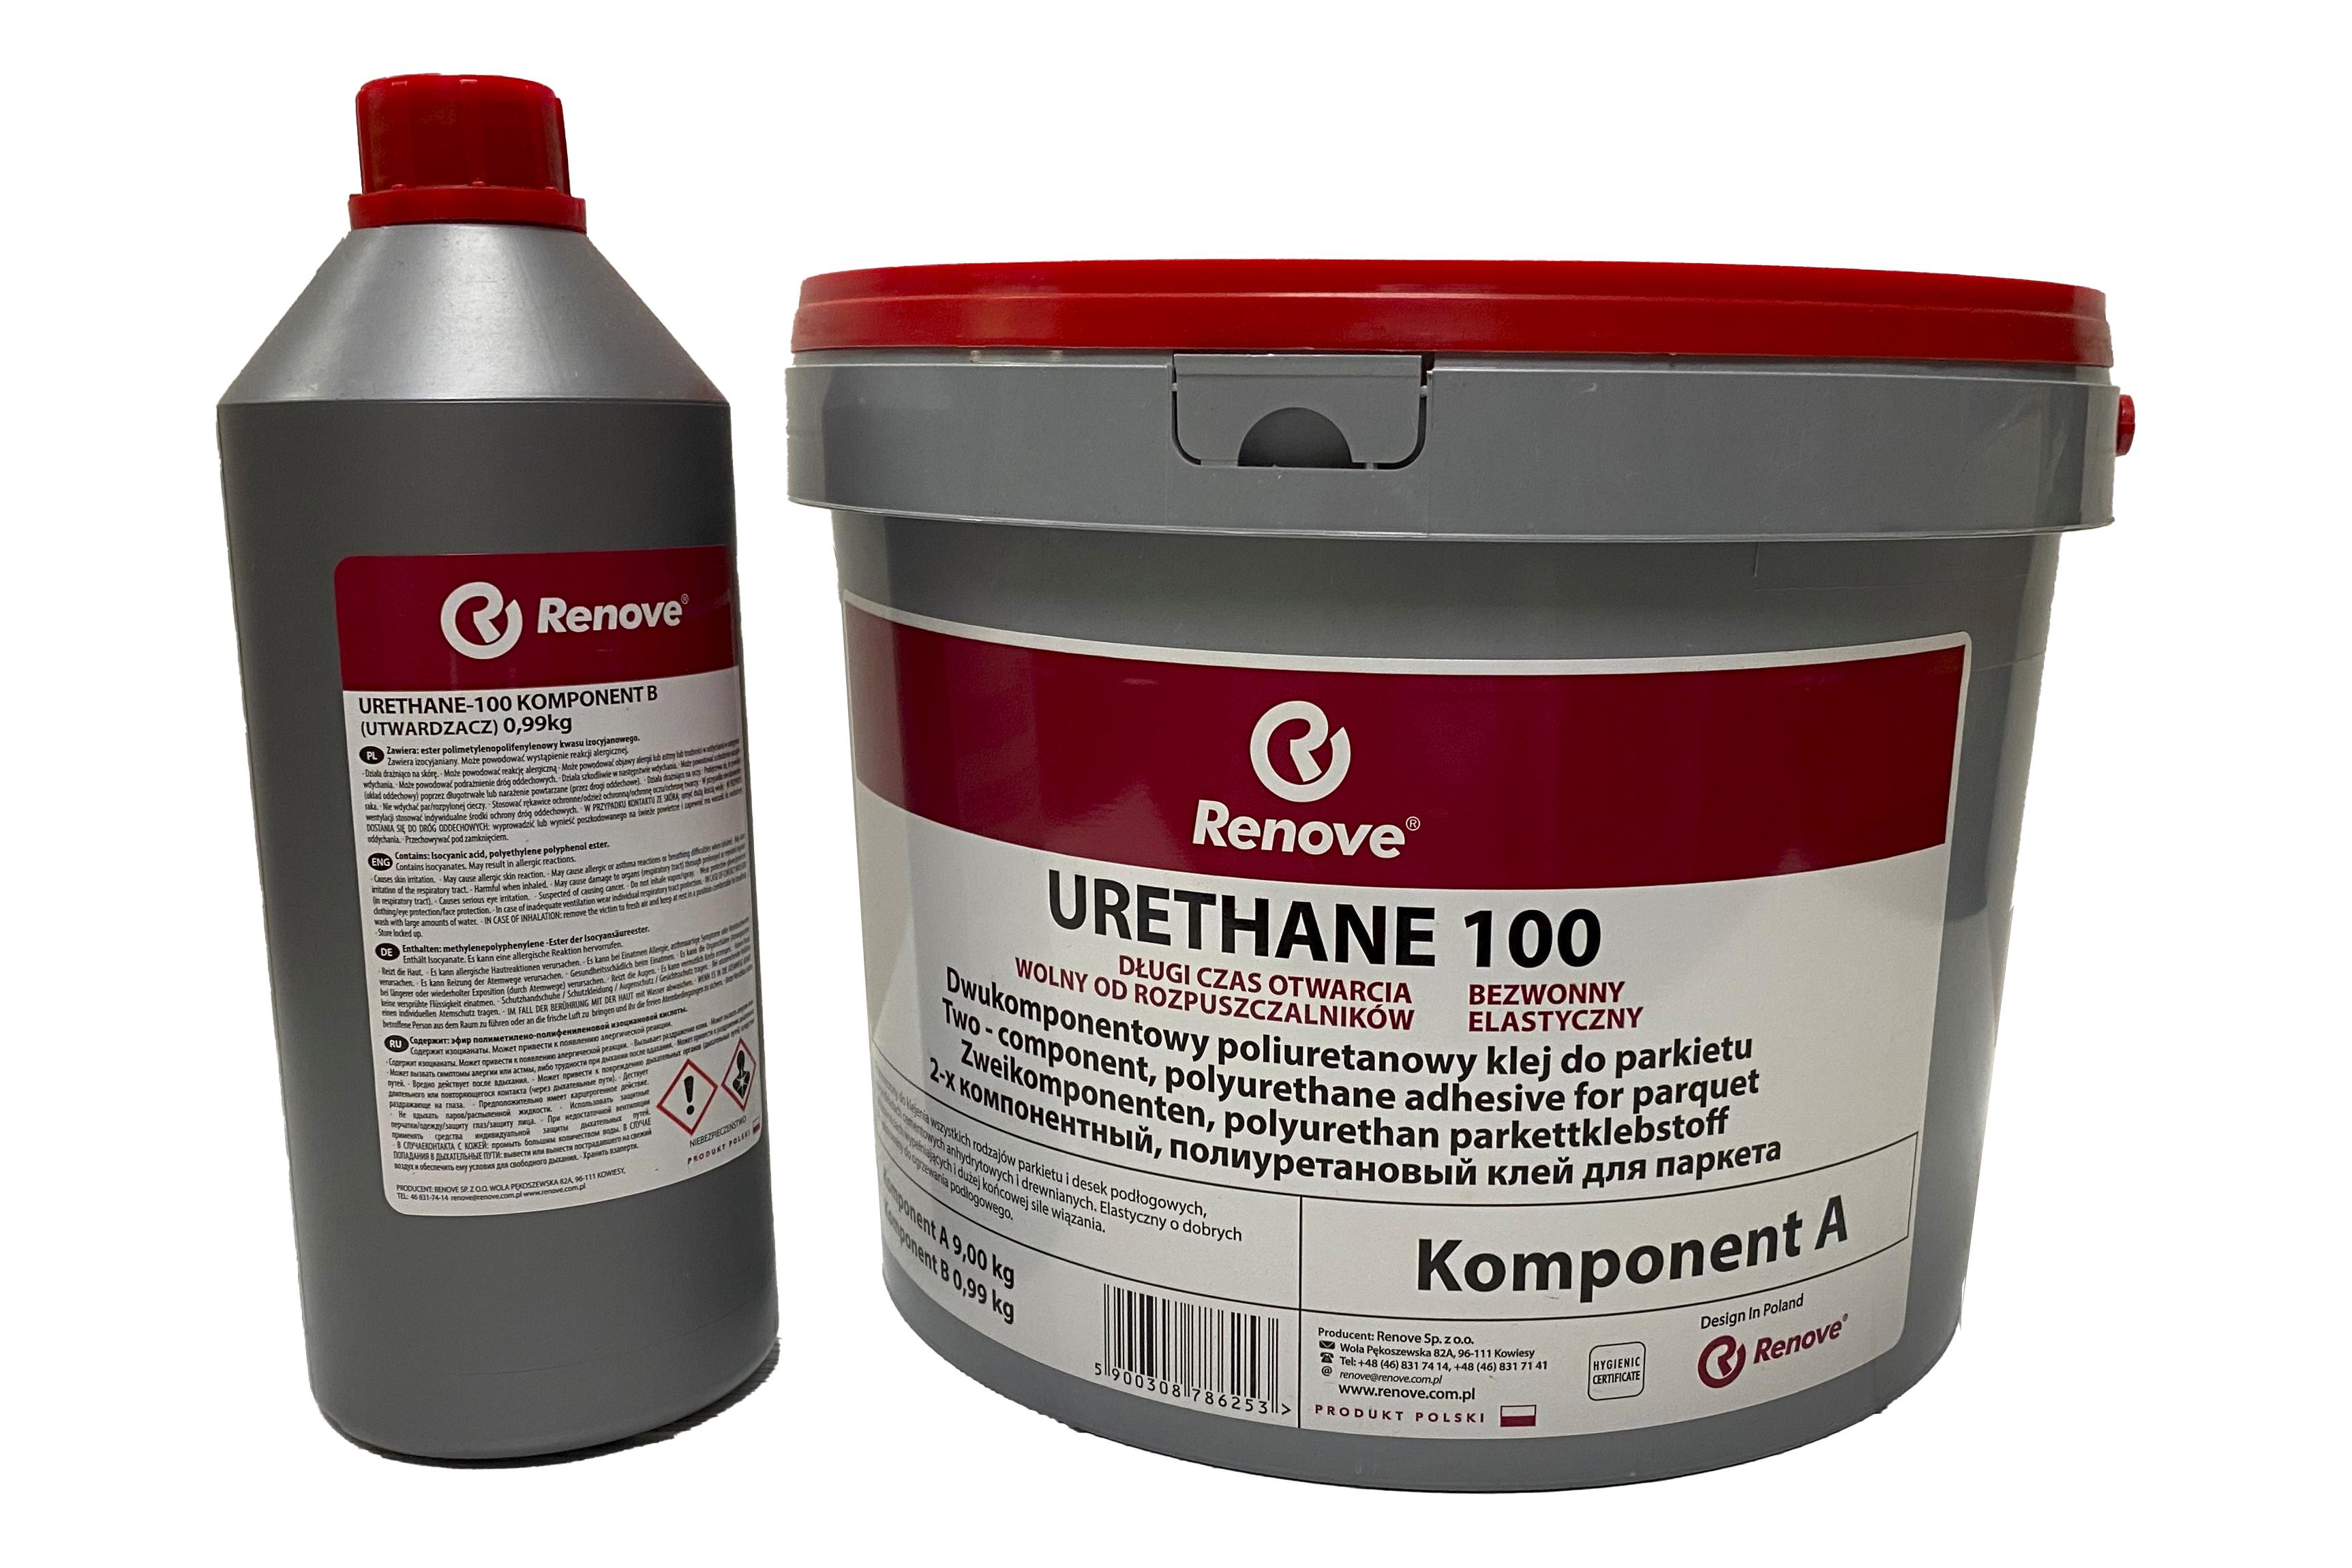 Клей для паркету Renove Urethane 100 RE-002 2K поліуретановий 9,99 кг